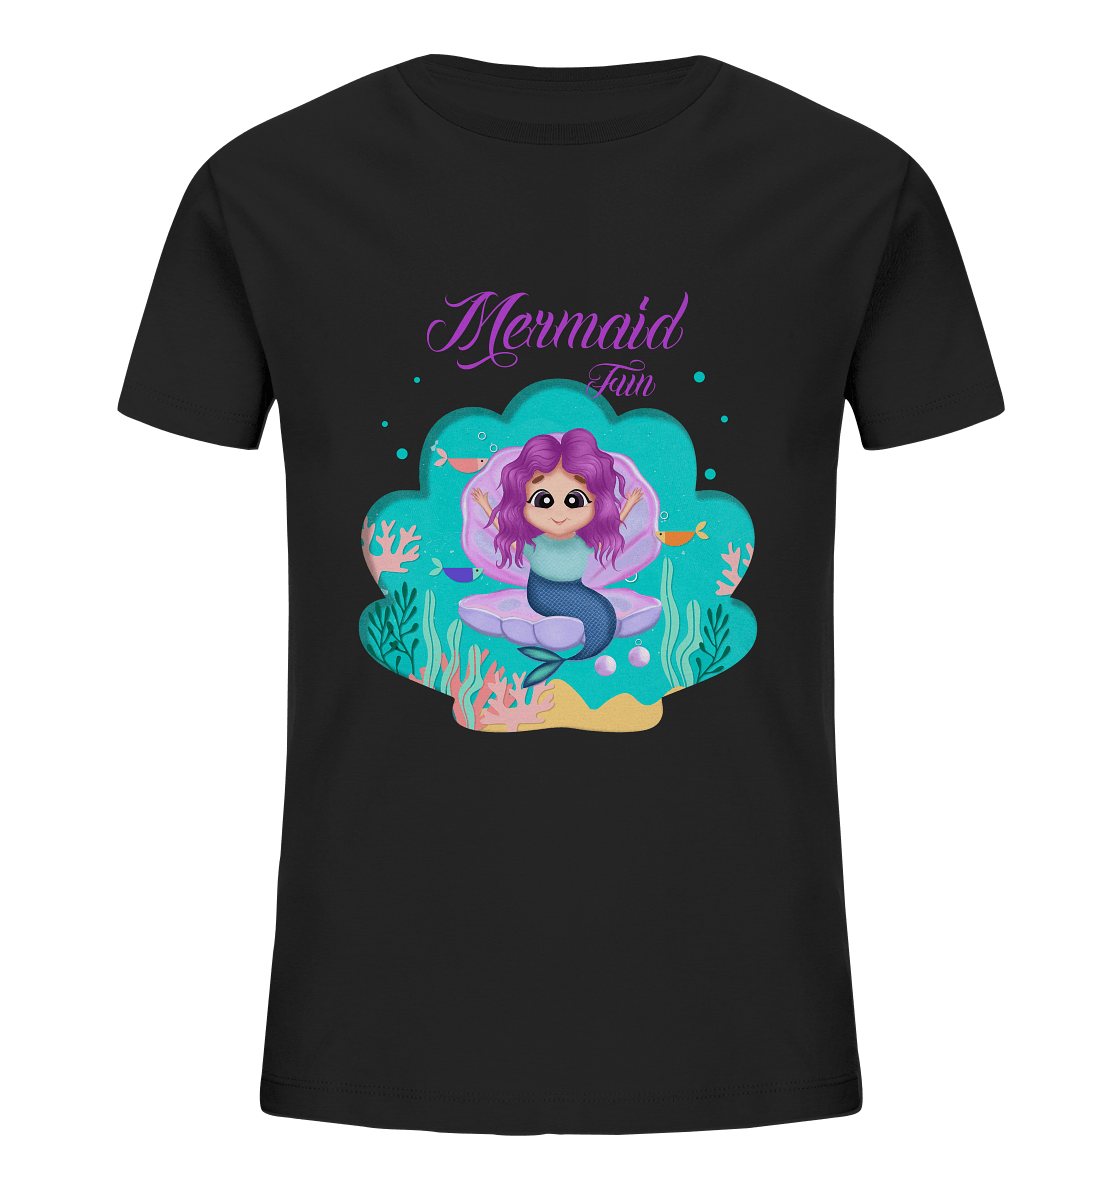 Meerjungfrau Cartoon T-Shirt mit handgezeichneten Mermaid Cartoon und Beschriftung "Mermaid Fun" baby ariel T-Shirt in schwarz